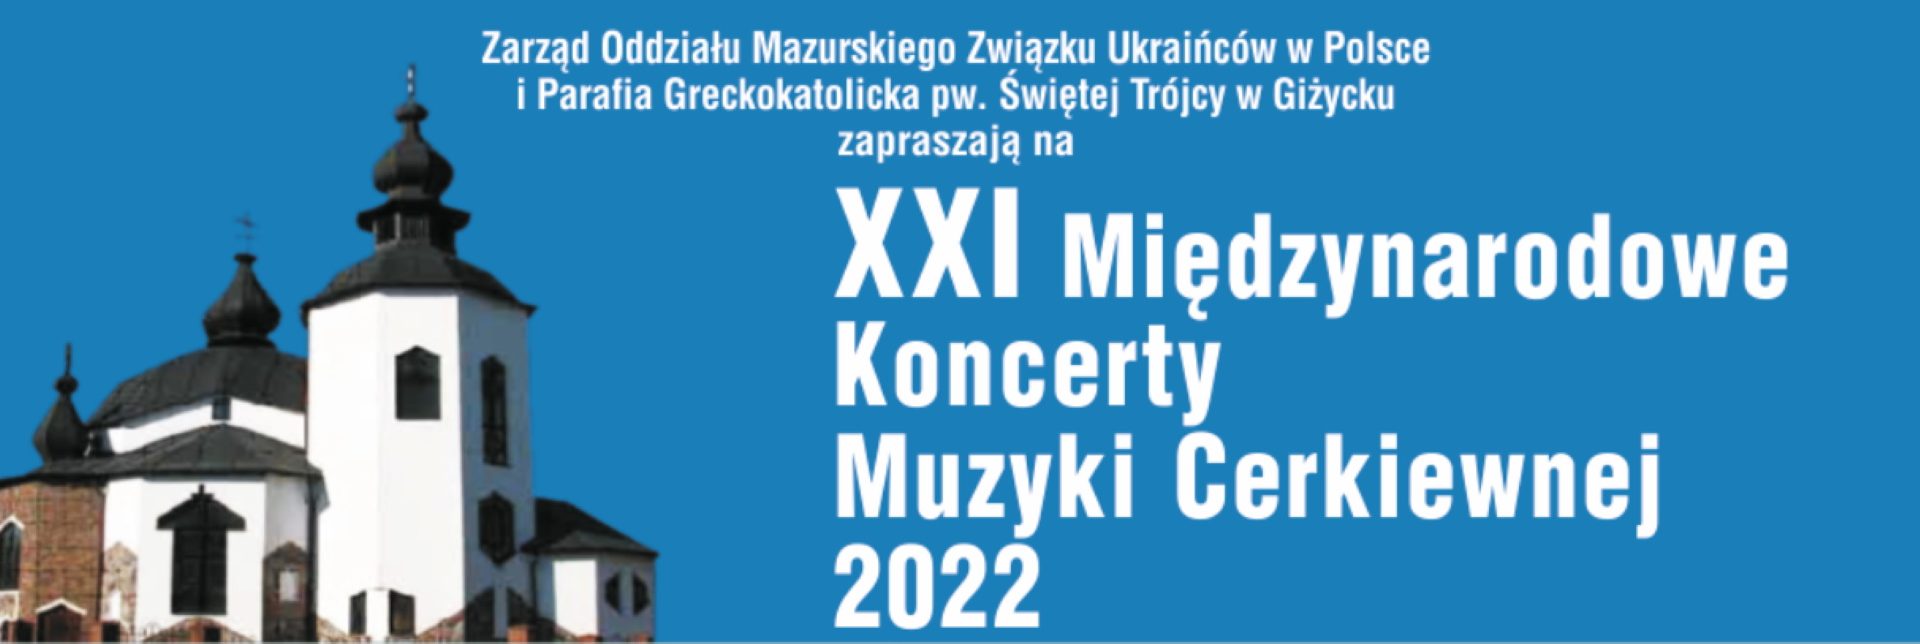 Plakat zapraszający do Giżycka na Międzynarodowe Koncerty Muzyki Cerkiewnej Giżycko 2022.